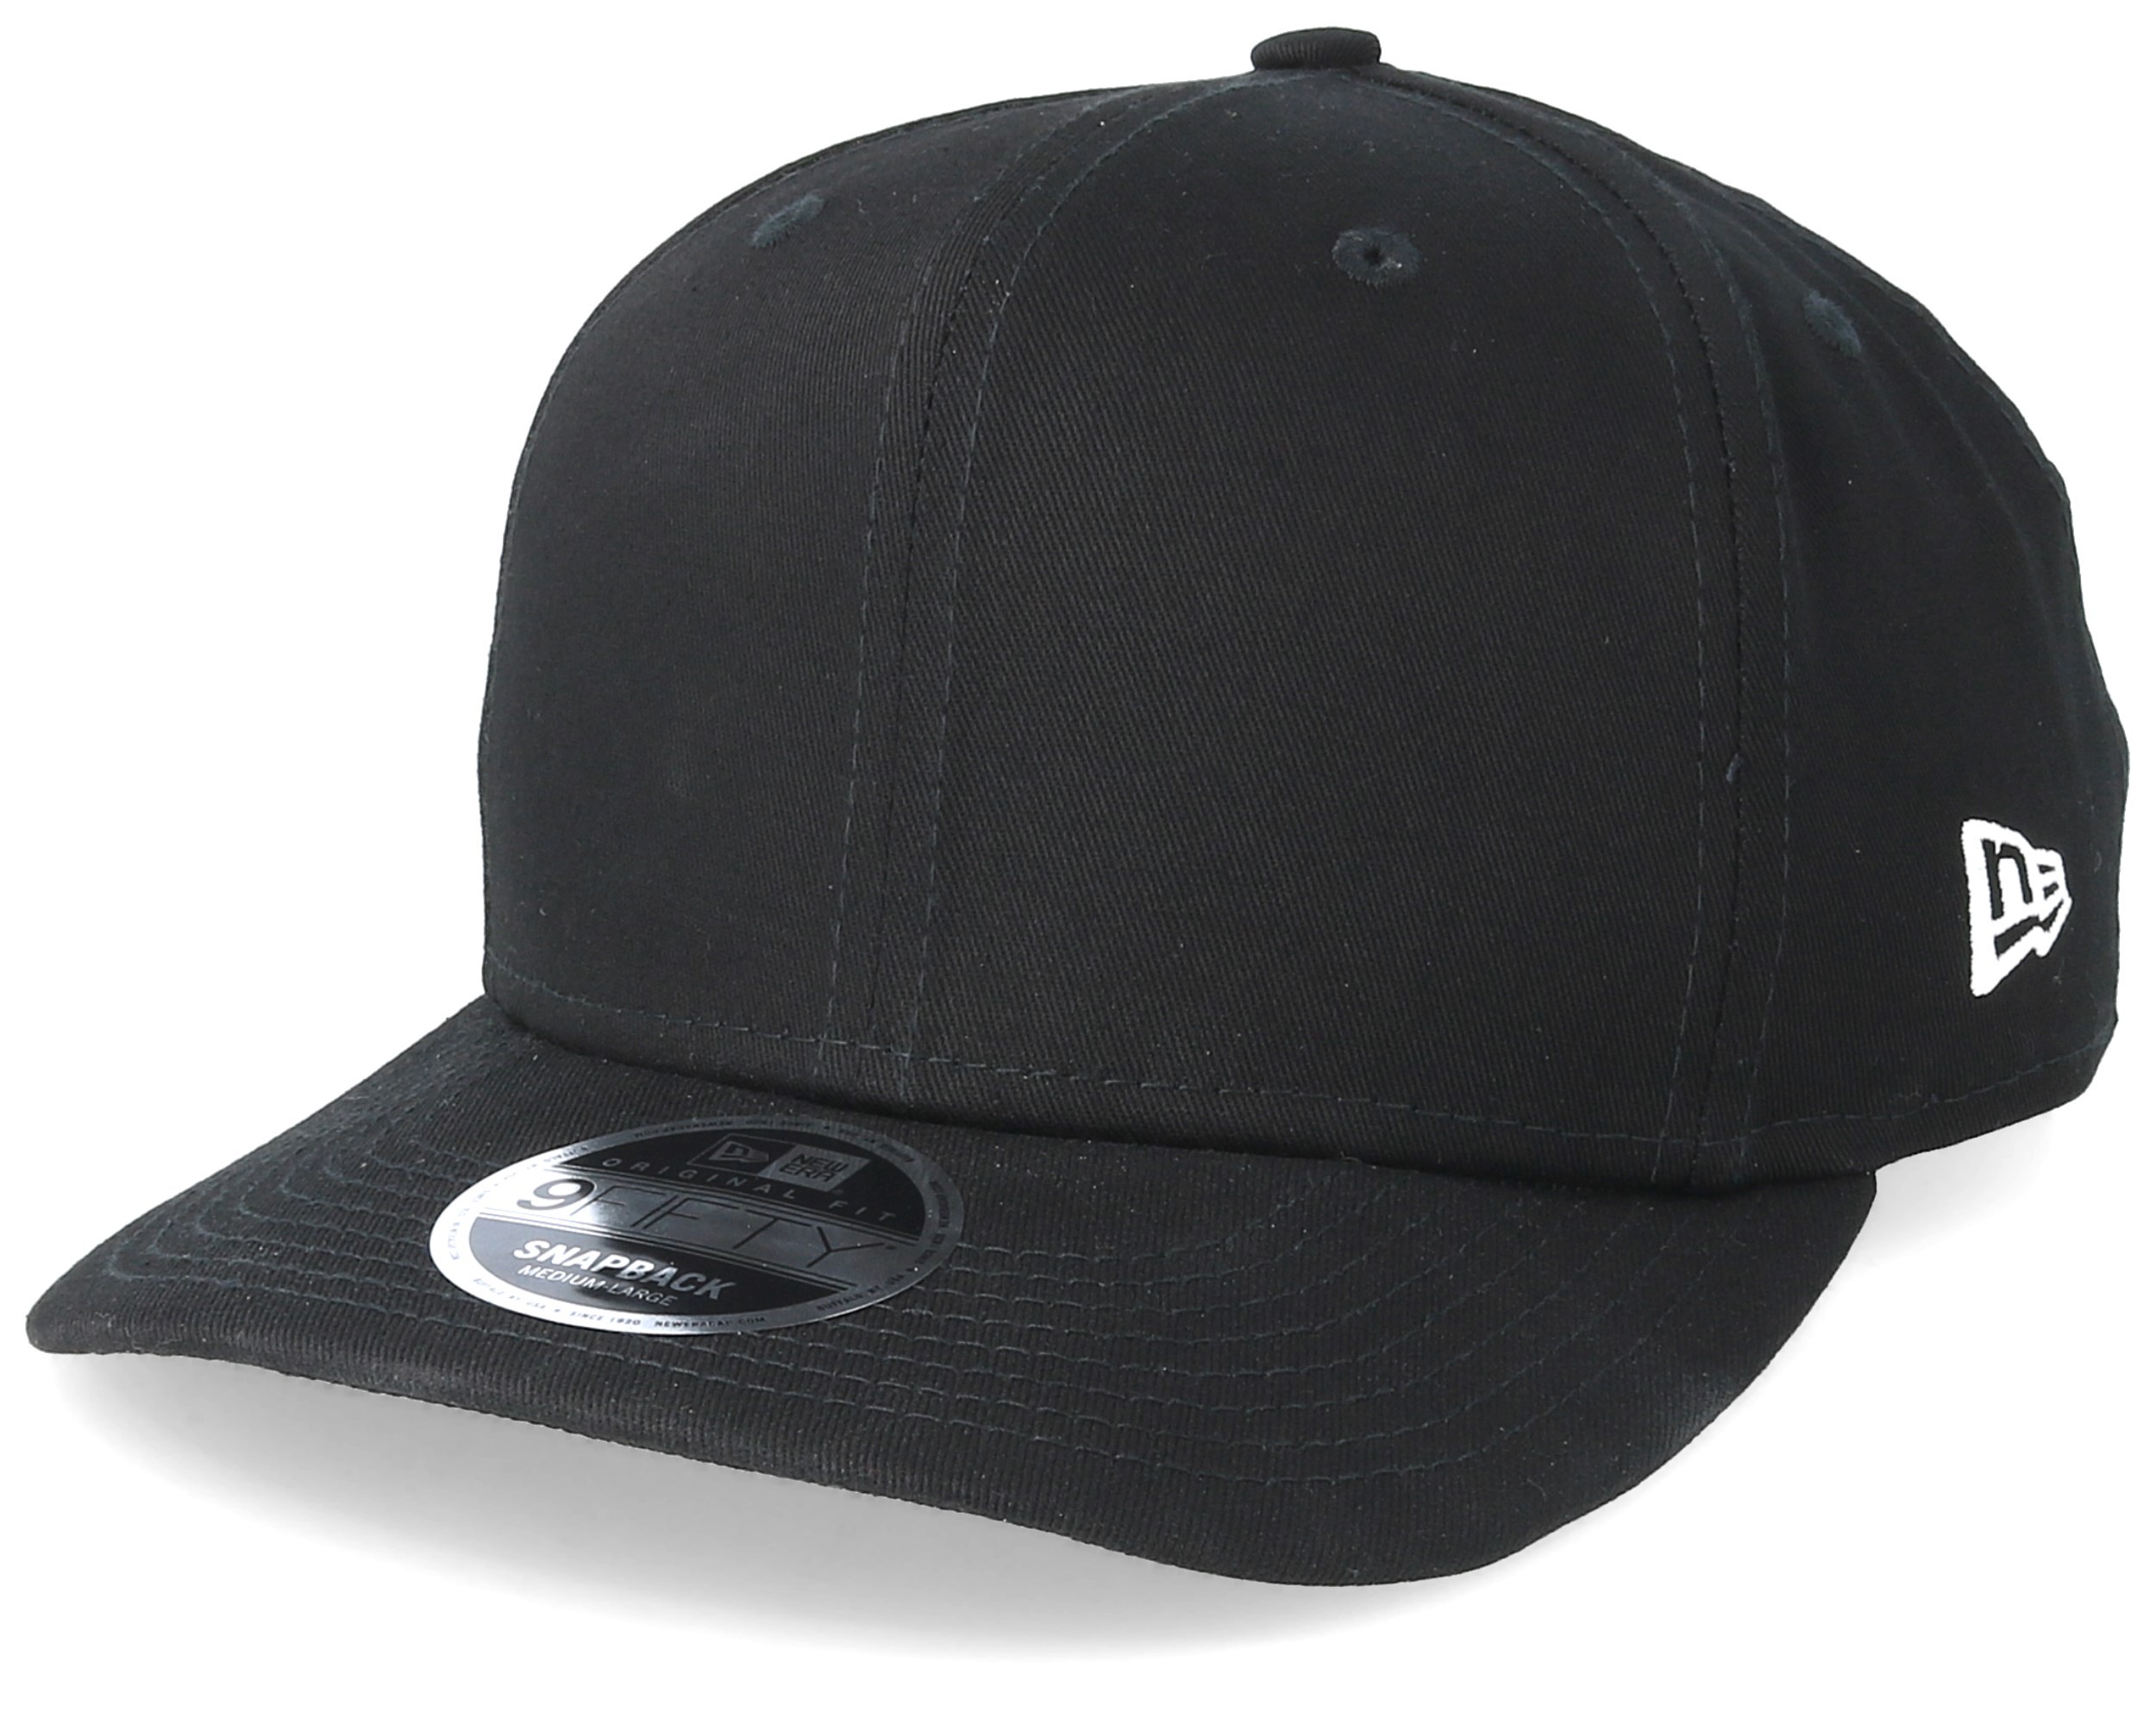 Essential 9Fifty Stretch Black Snapback - New Era caps - Hatstoreworld.com